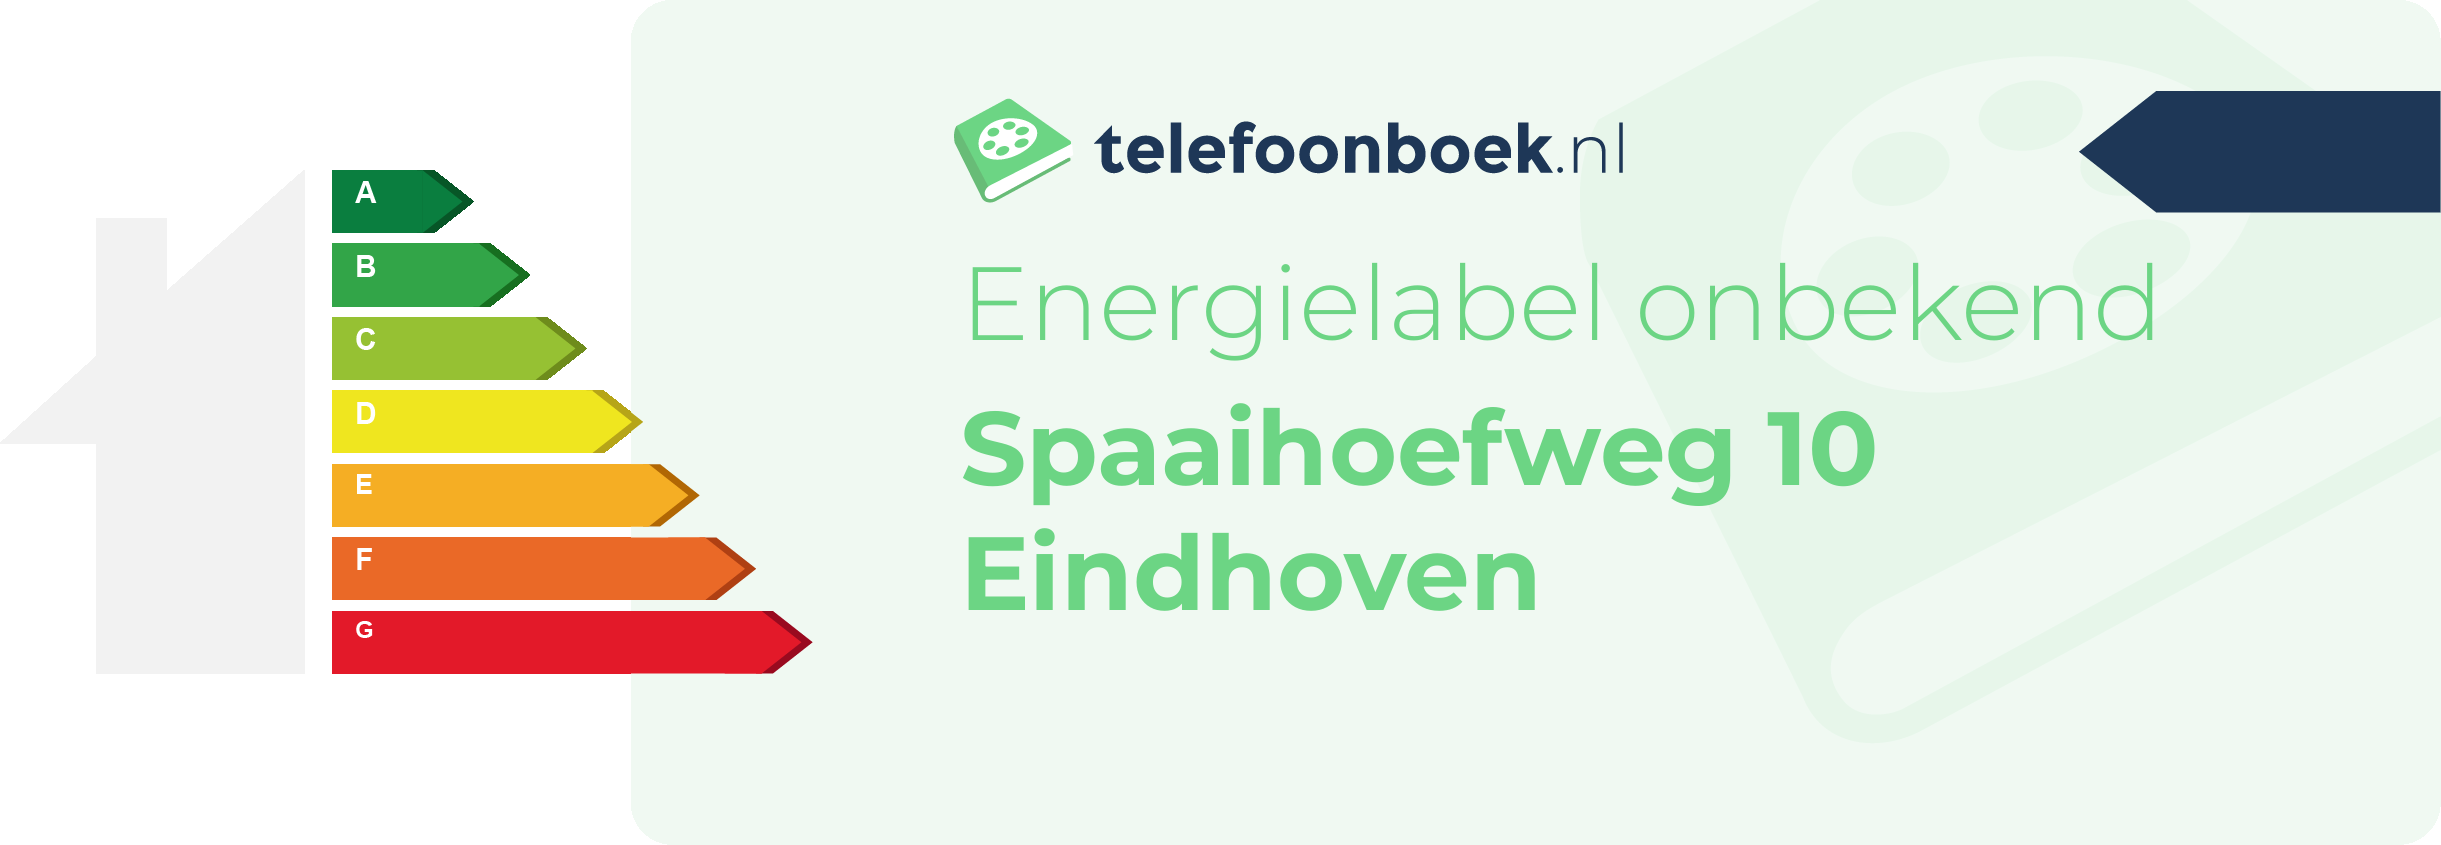 Energielabel Spaaihoefweg 10 Eindhoven